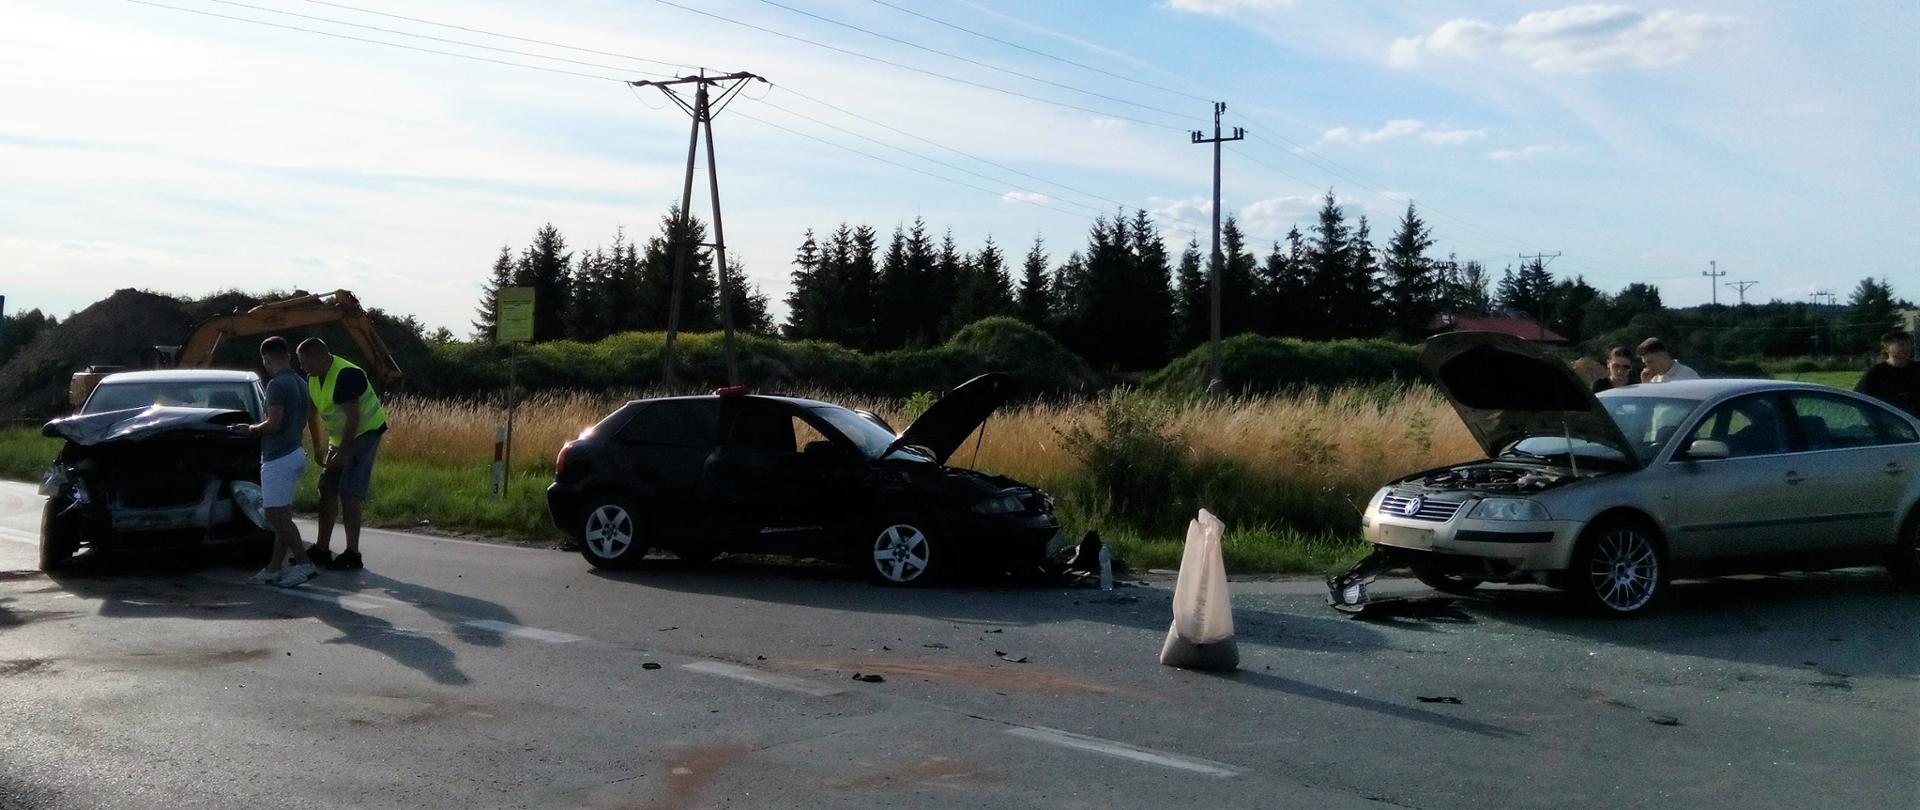 Na zdjęciu przedstawiono trzy samochody osobowe, które uległy zderzeniu. 